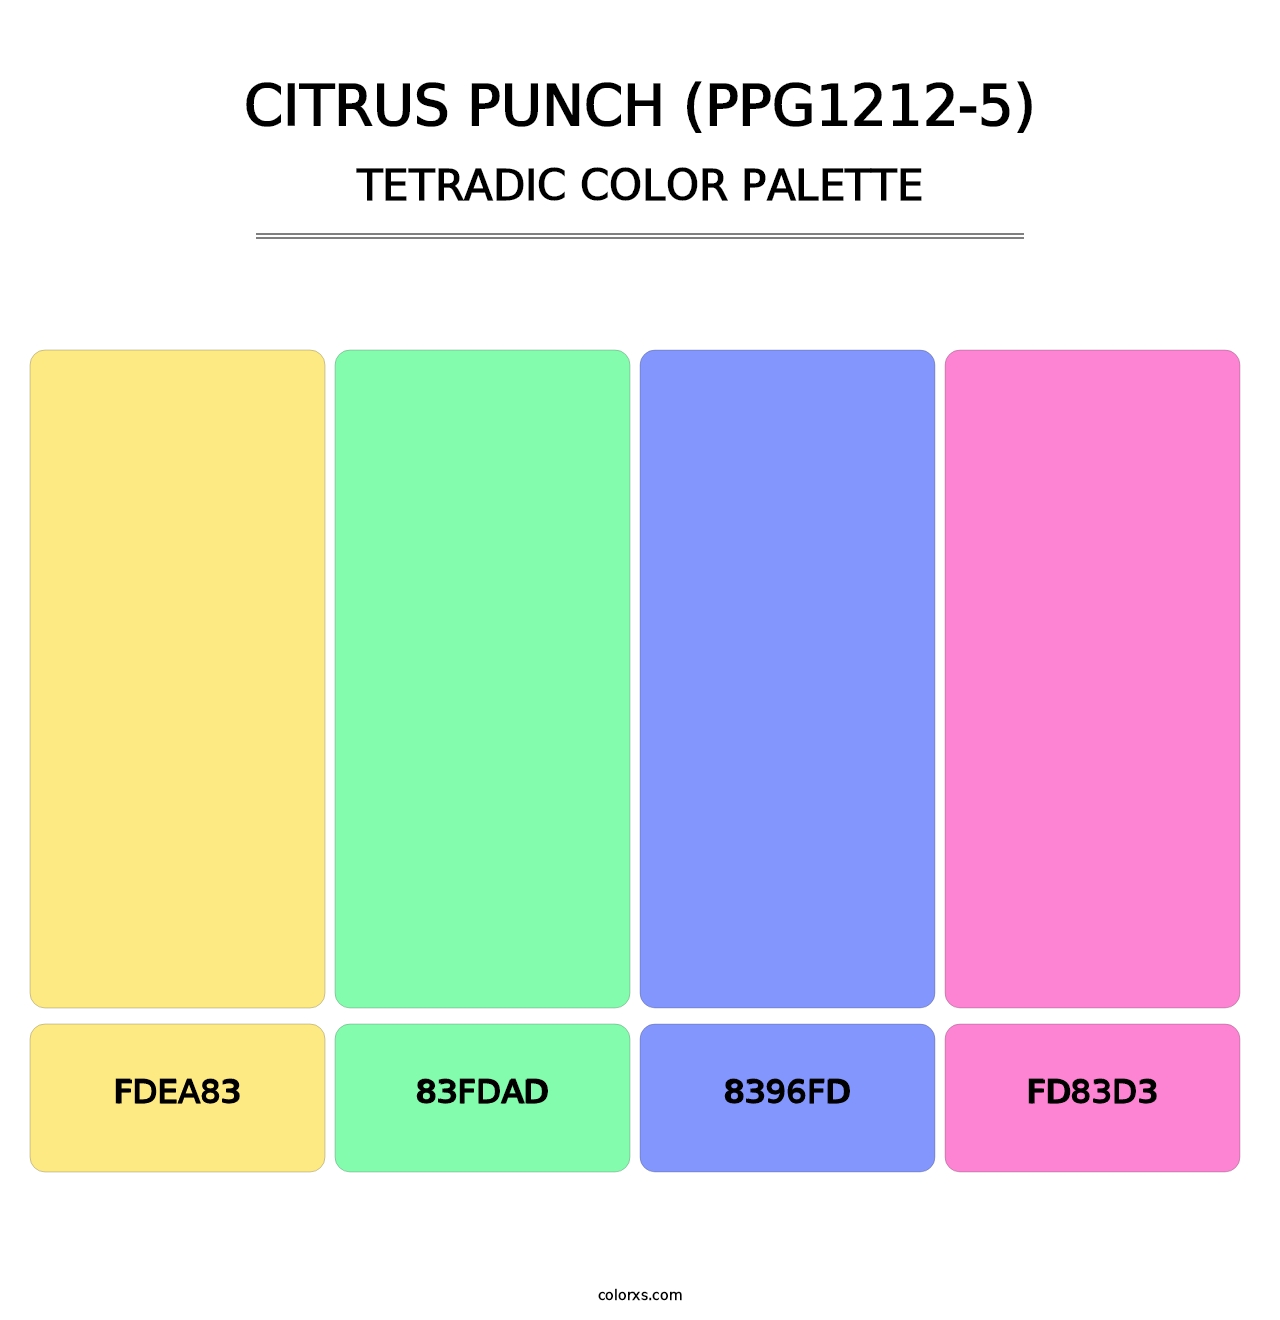 Citrus Punch (PPG1212-5) - Tetradic Color Palette